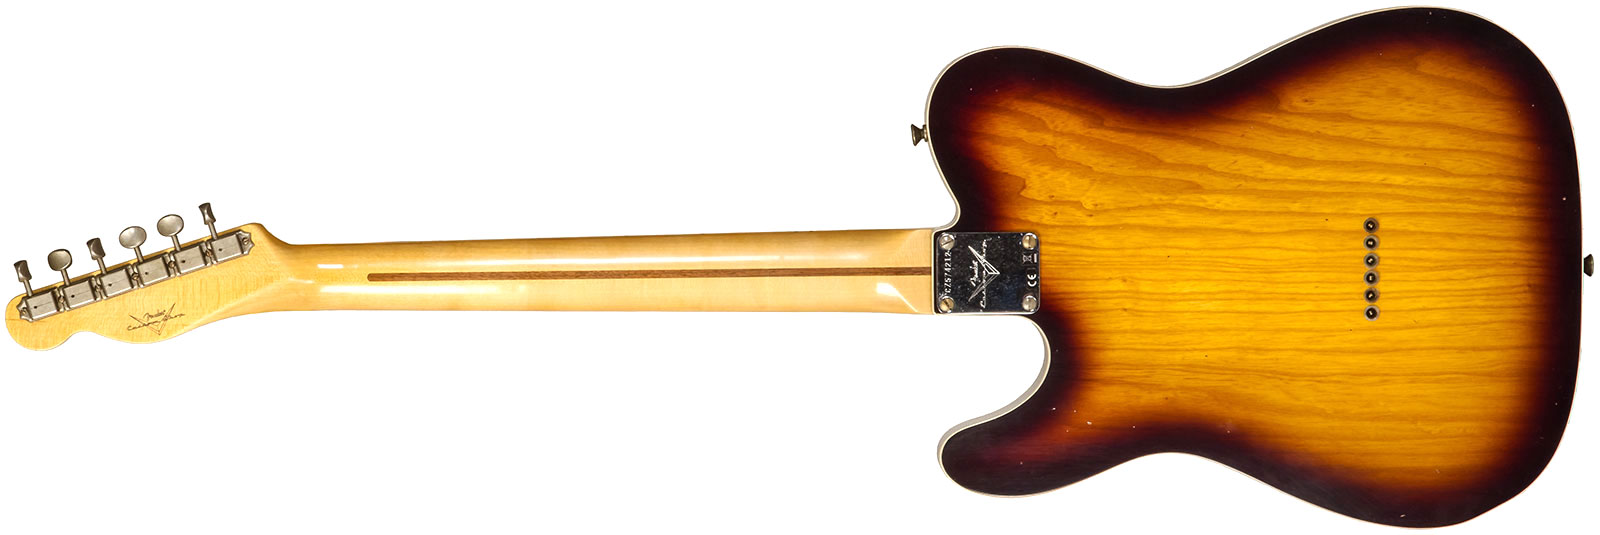 Fender Custom Shop Tele Thinline 50s Mn #cz574212 - Journeyman Relic Aged 2-color Sunburst - Guitare Électrique Forme Tel - Variation 2